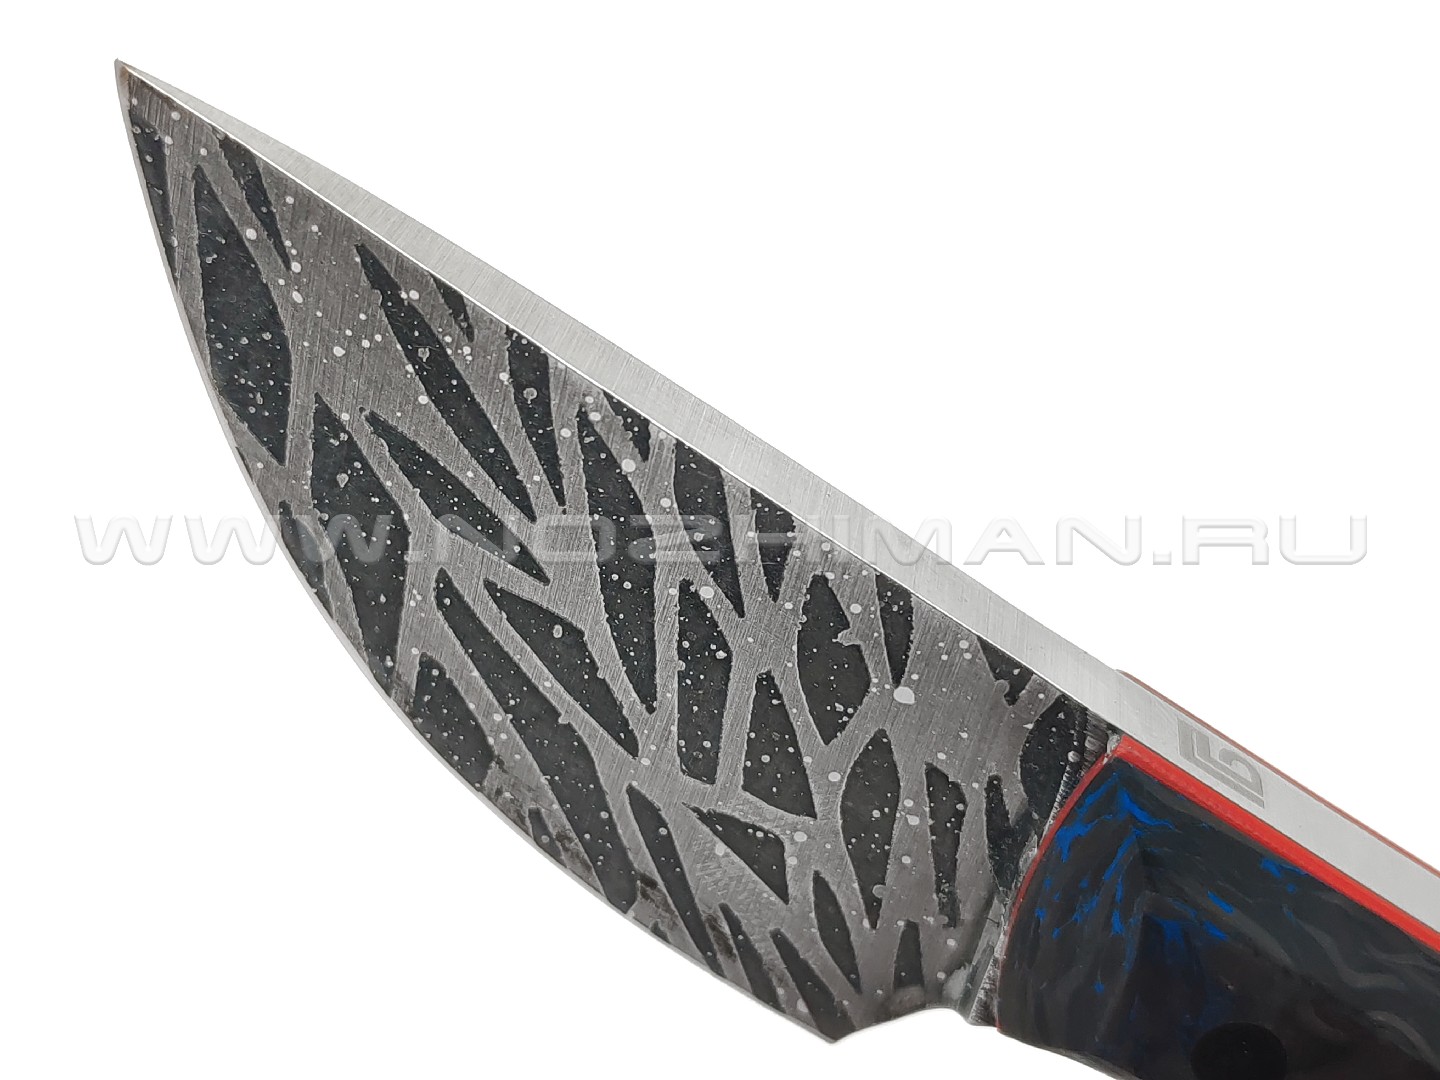 Богдан Гоготов нож NBG-55 сталь 95Х18 травление, рукоять Chaotic carbon fiber blue